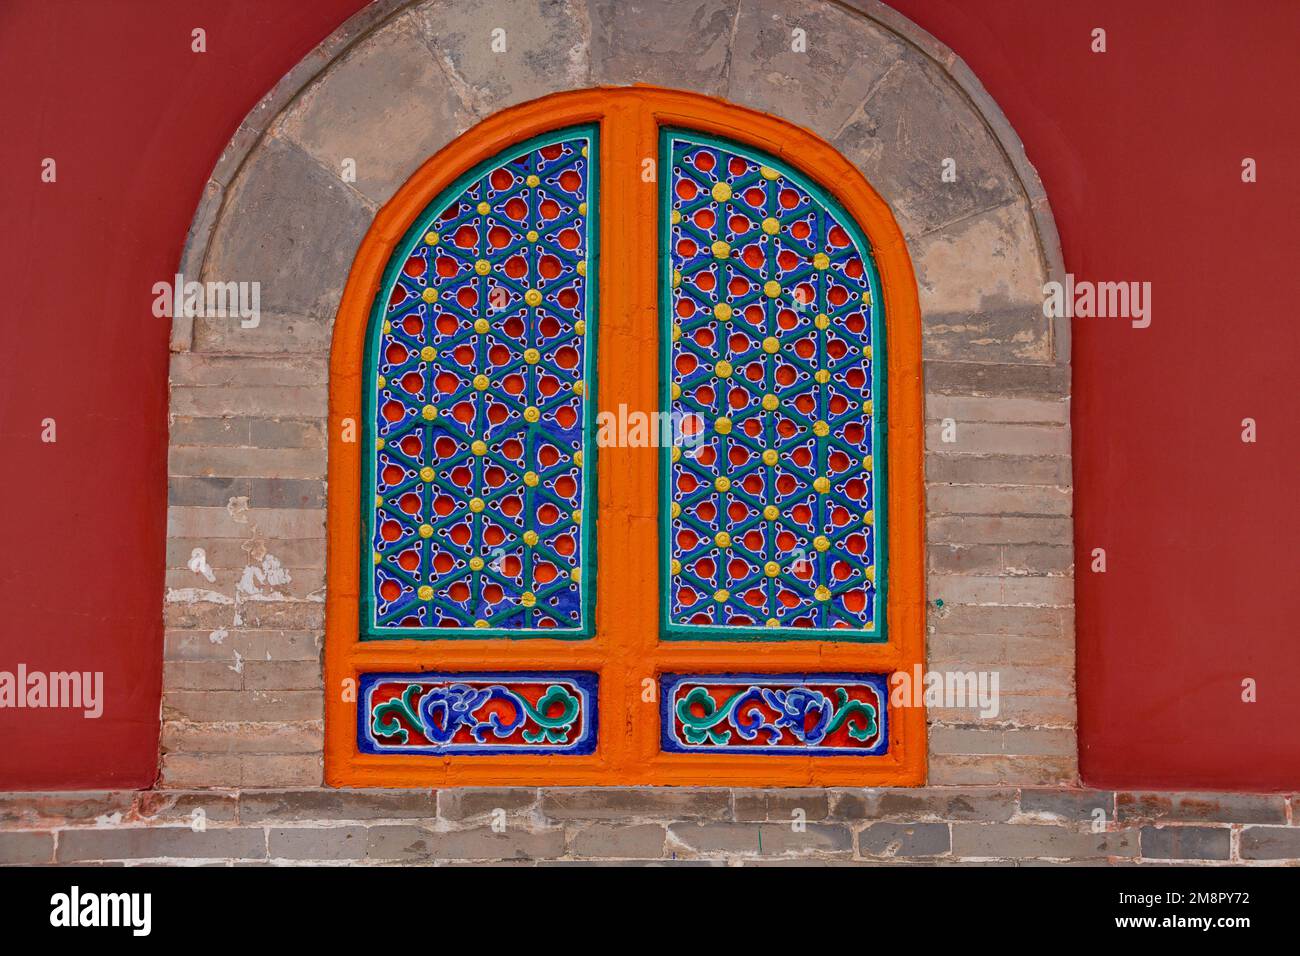 Fachada roja y ventana simétrica pintada de colores en la Casa de los Sacerdotes en el Monasterio Tibetano Kumbum, Xining, China Foto de stock